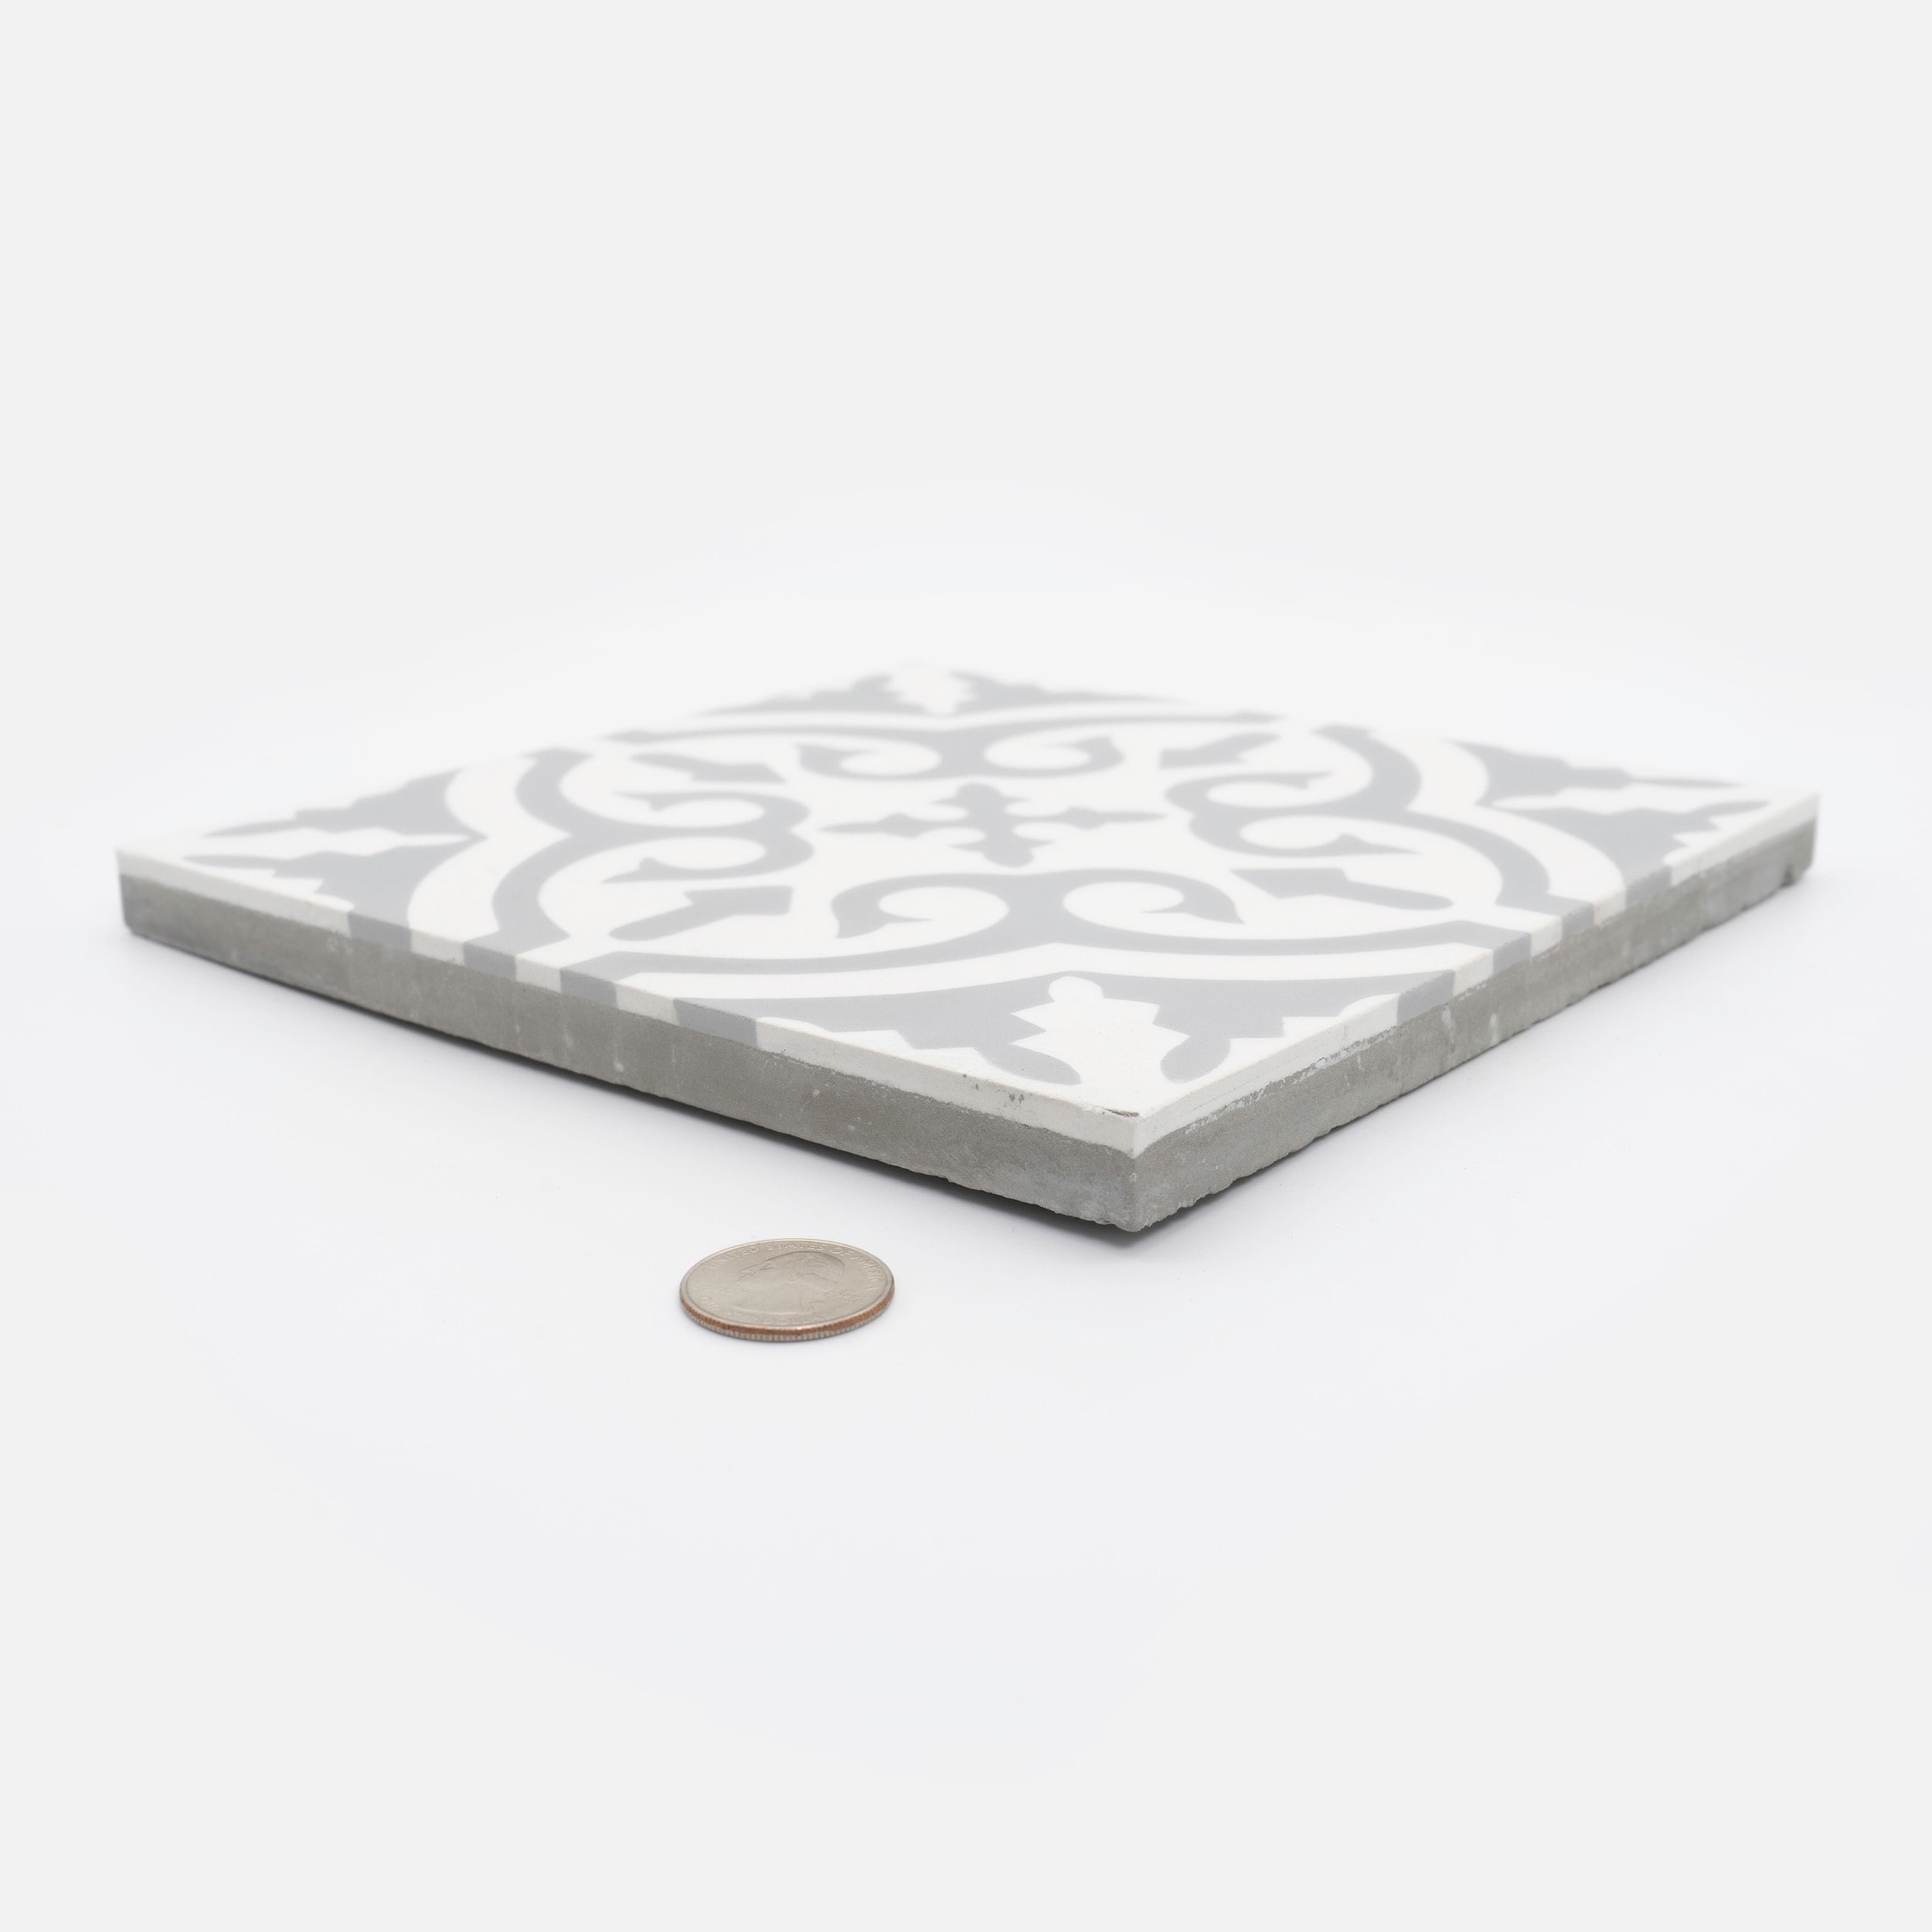 Argana Handmade Cement Tile, 8x8, White/Grey